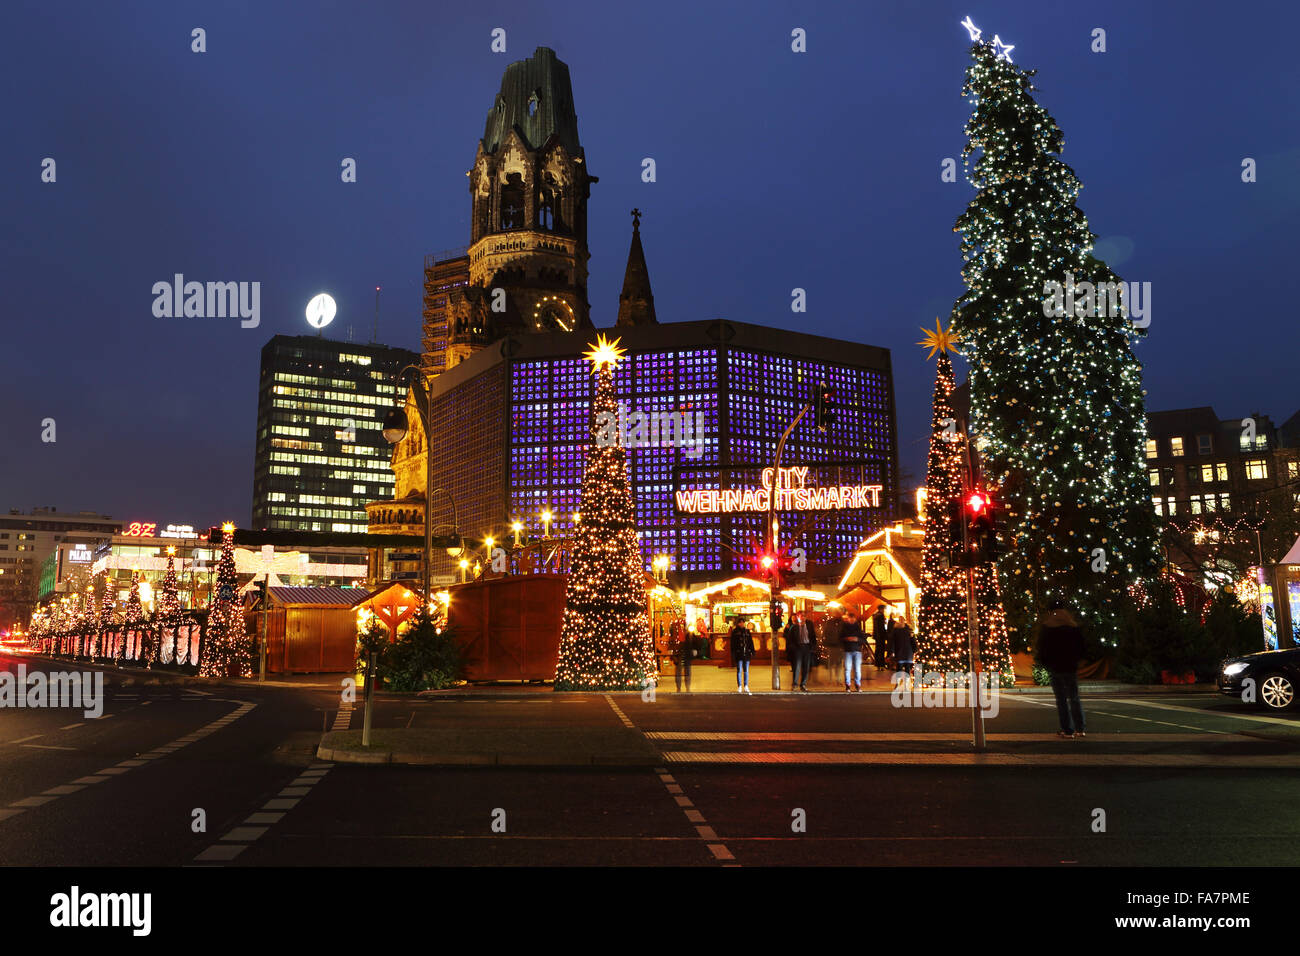 Der Stadt-Weihnachtsmarkt bin Gedachtniskirche Weihnachtsmarkt am Ku'damm in Berlin, Deutschland. Stockfoto